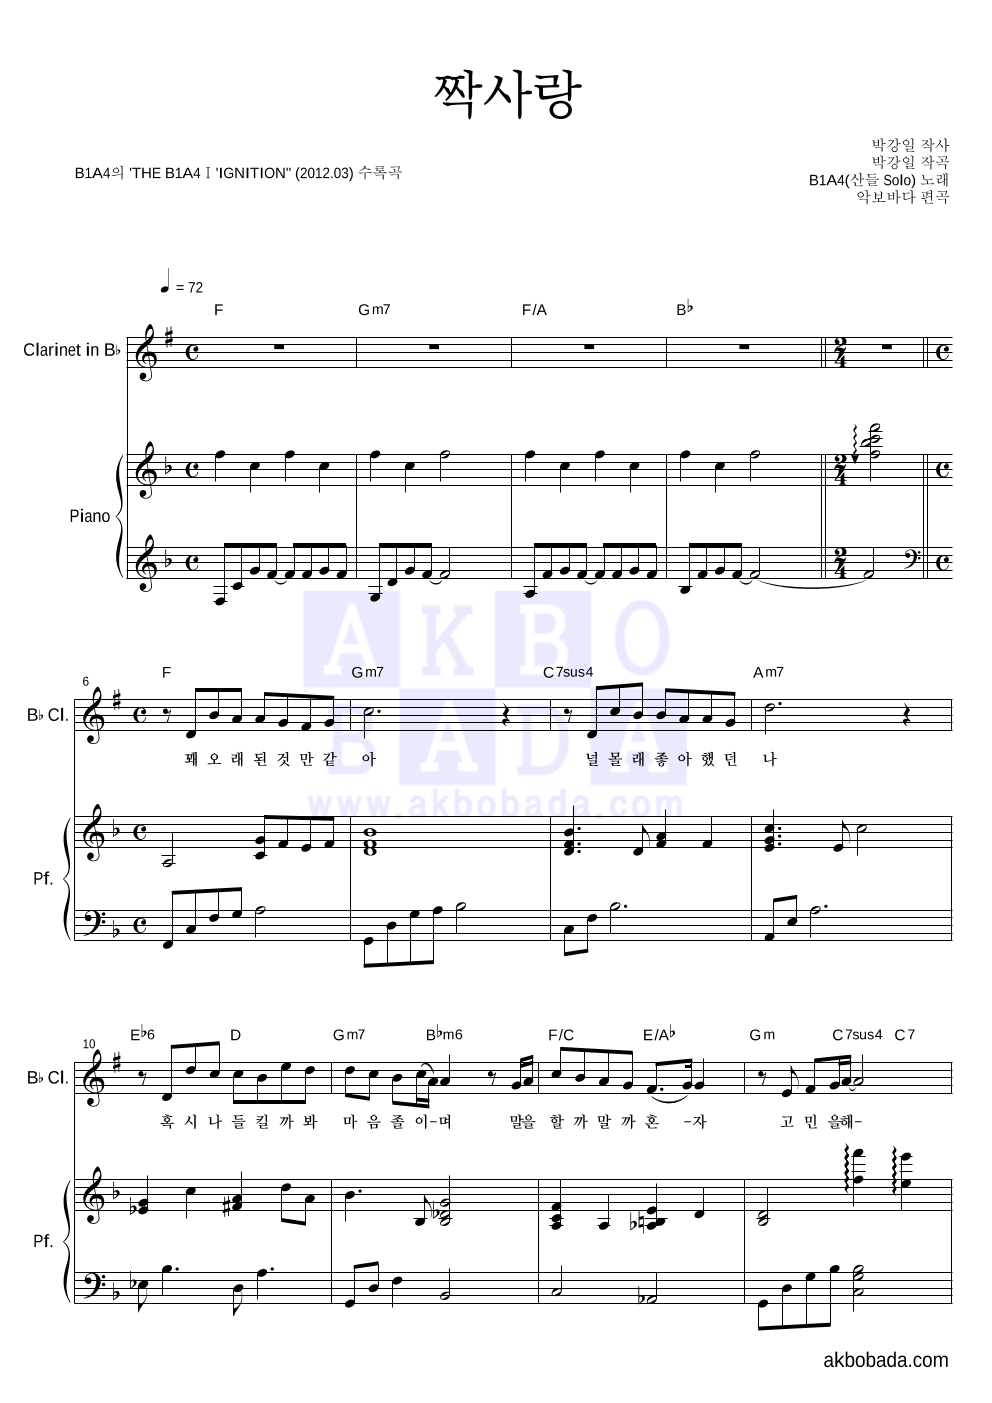 B1A4 - 짝사랑 (산들 Solo) 클라리넷&피아노 악보 